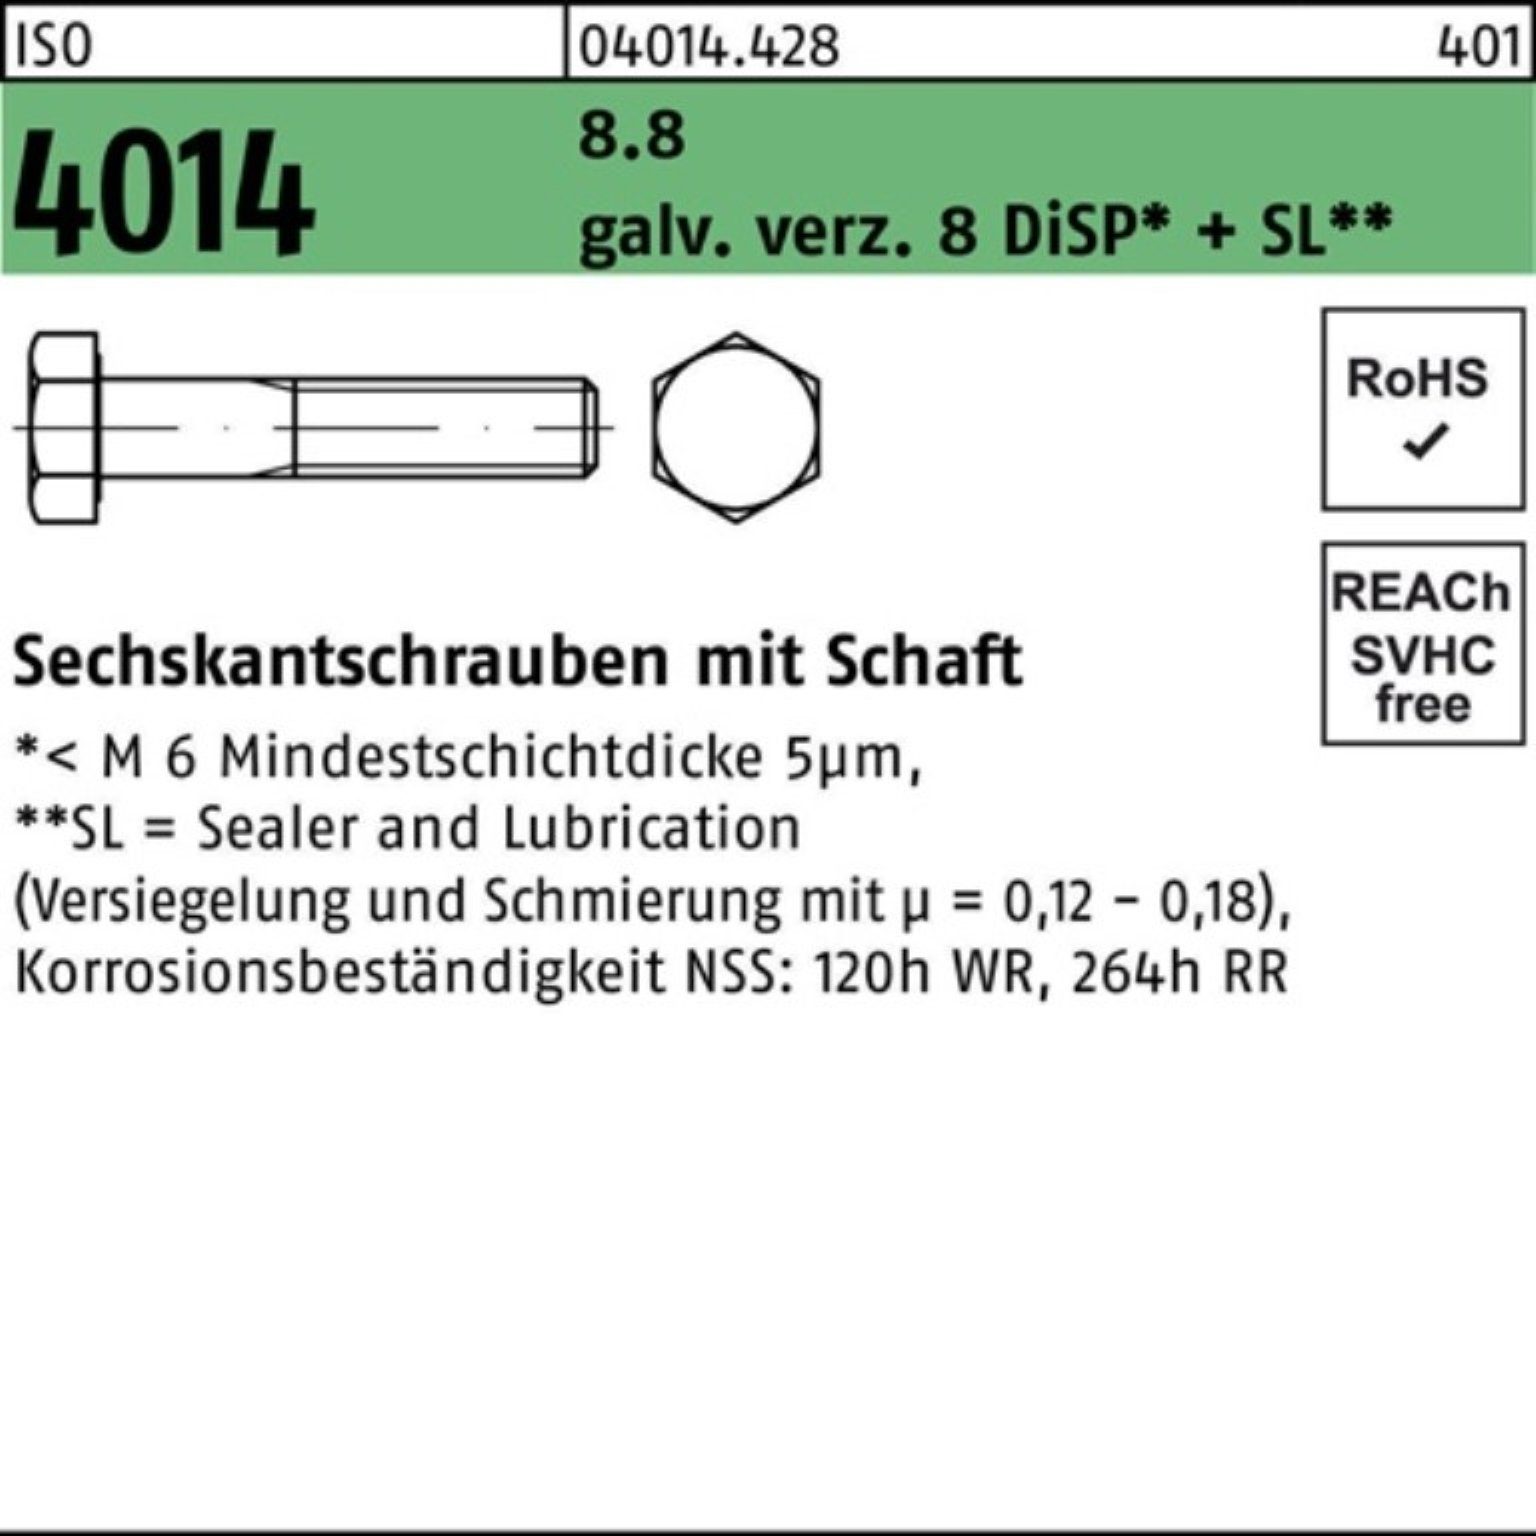 Bufab Sechskantschraube 100er Pack 8.8 Schaft M20x100 4014 ISO galv.verz. 8 Sechskantschraube